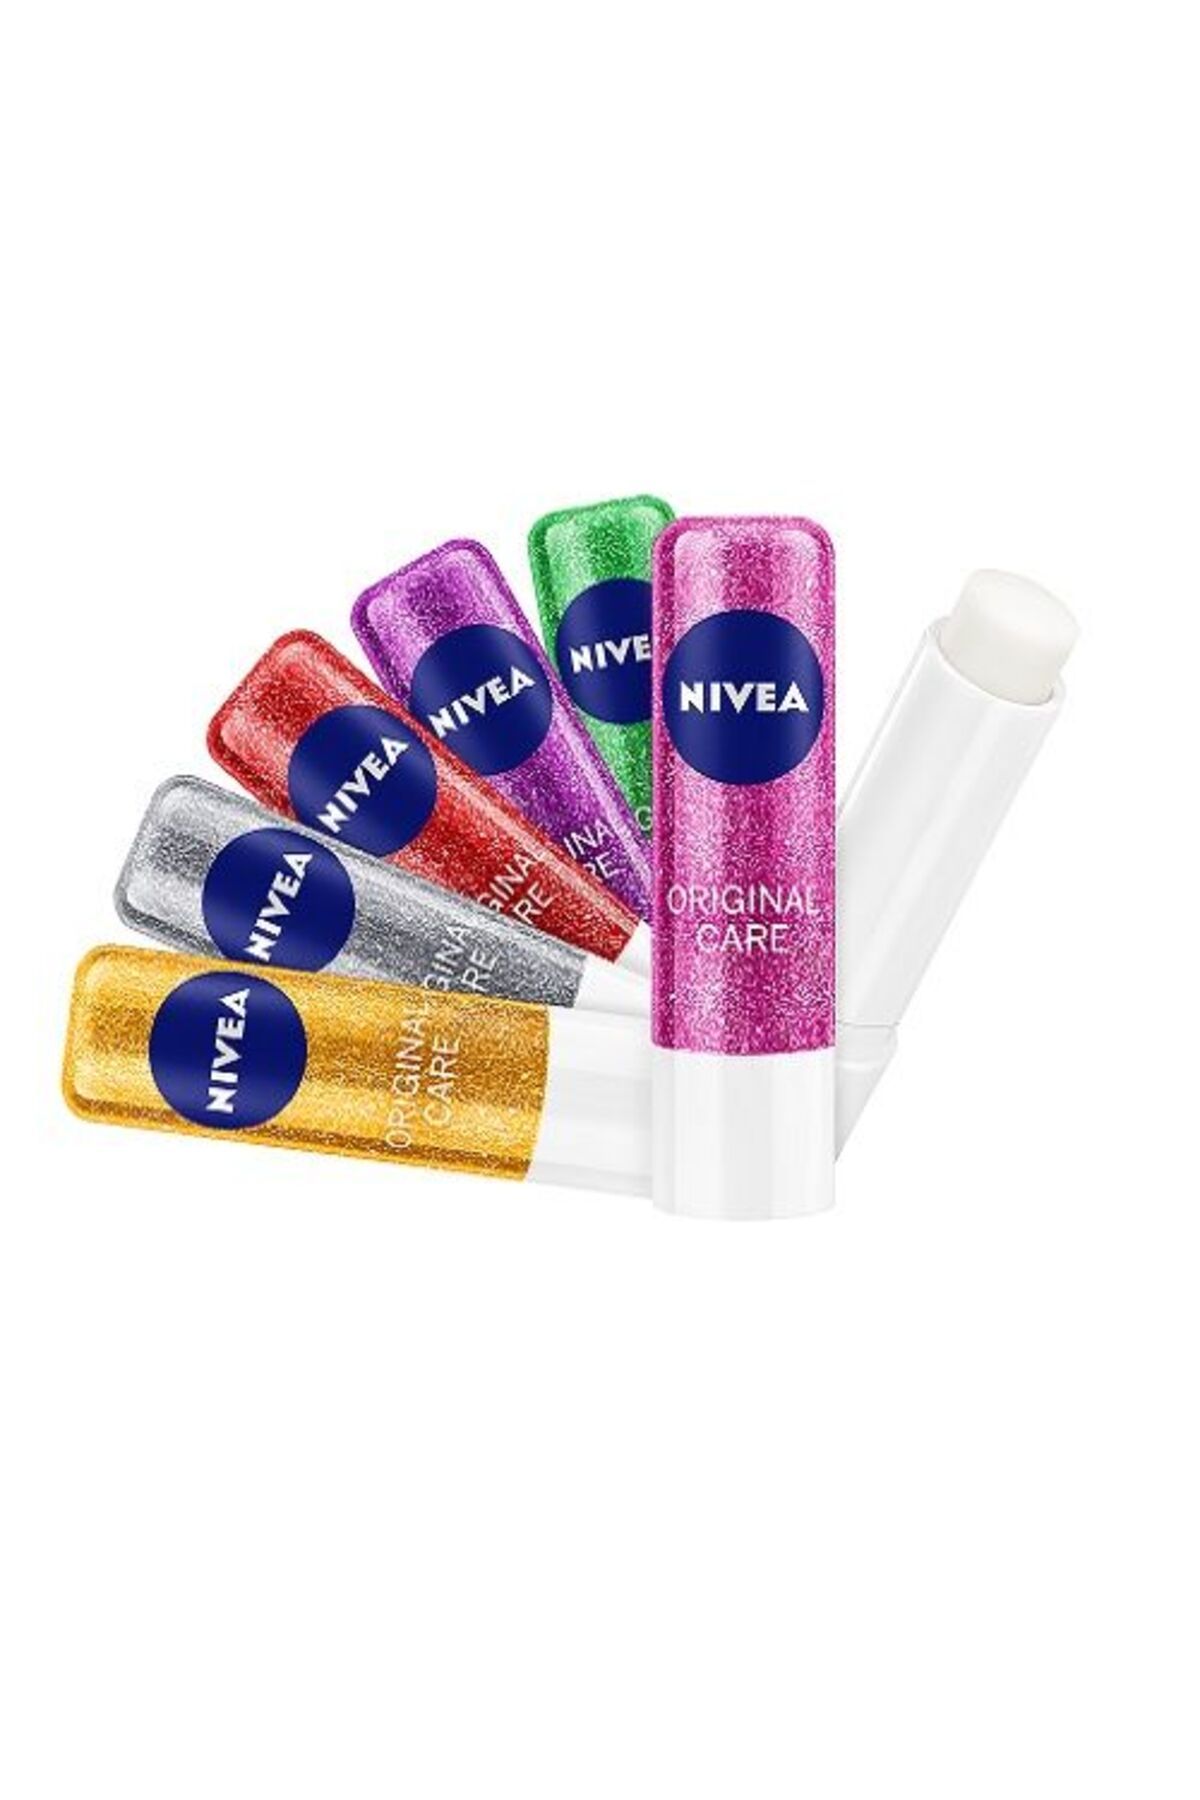 NIVEA Nıvea Orıgınal Care Lımıted Edıtıon Dudak Bakım Kremi 6 Işıltılı Renk Seçeneği (1 ADET)